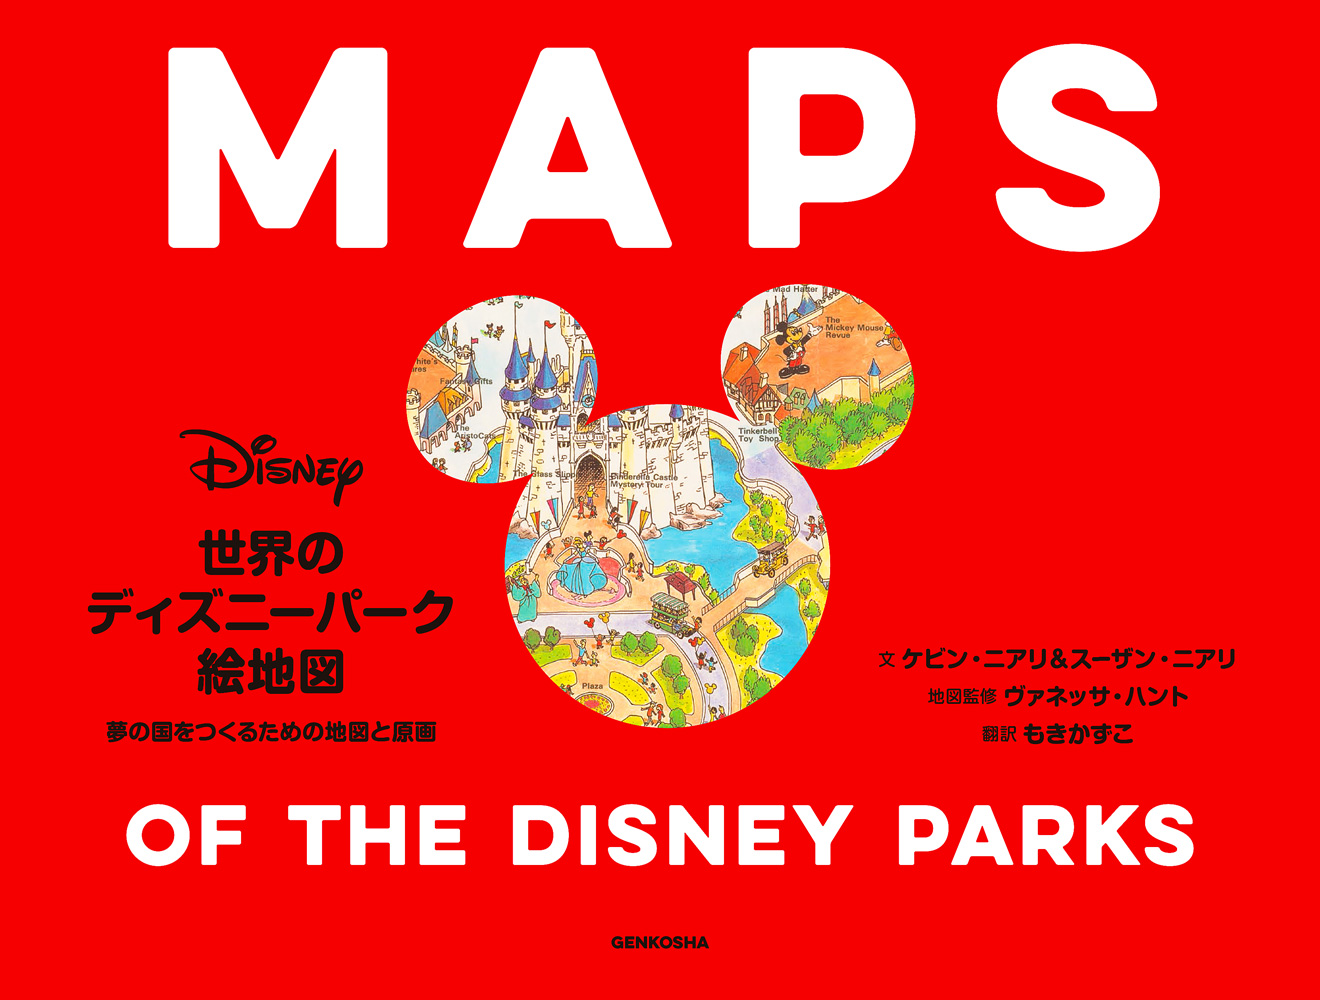 楽天ブックス 世界のディズニーパーク絵地図 夢の国をつくるための地図と原画 本